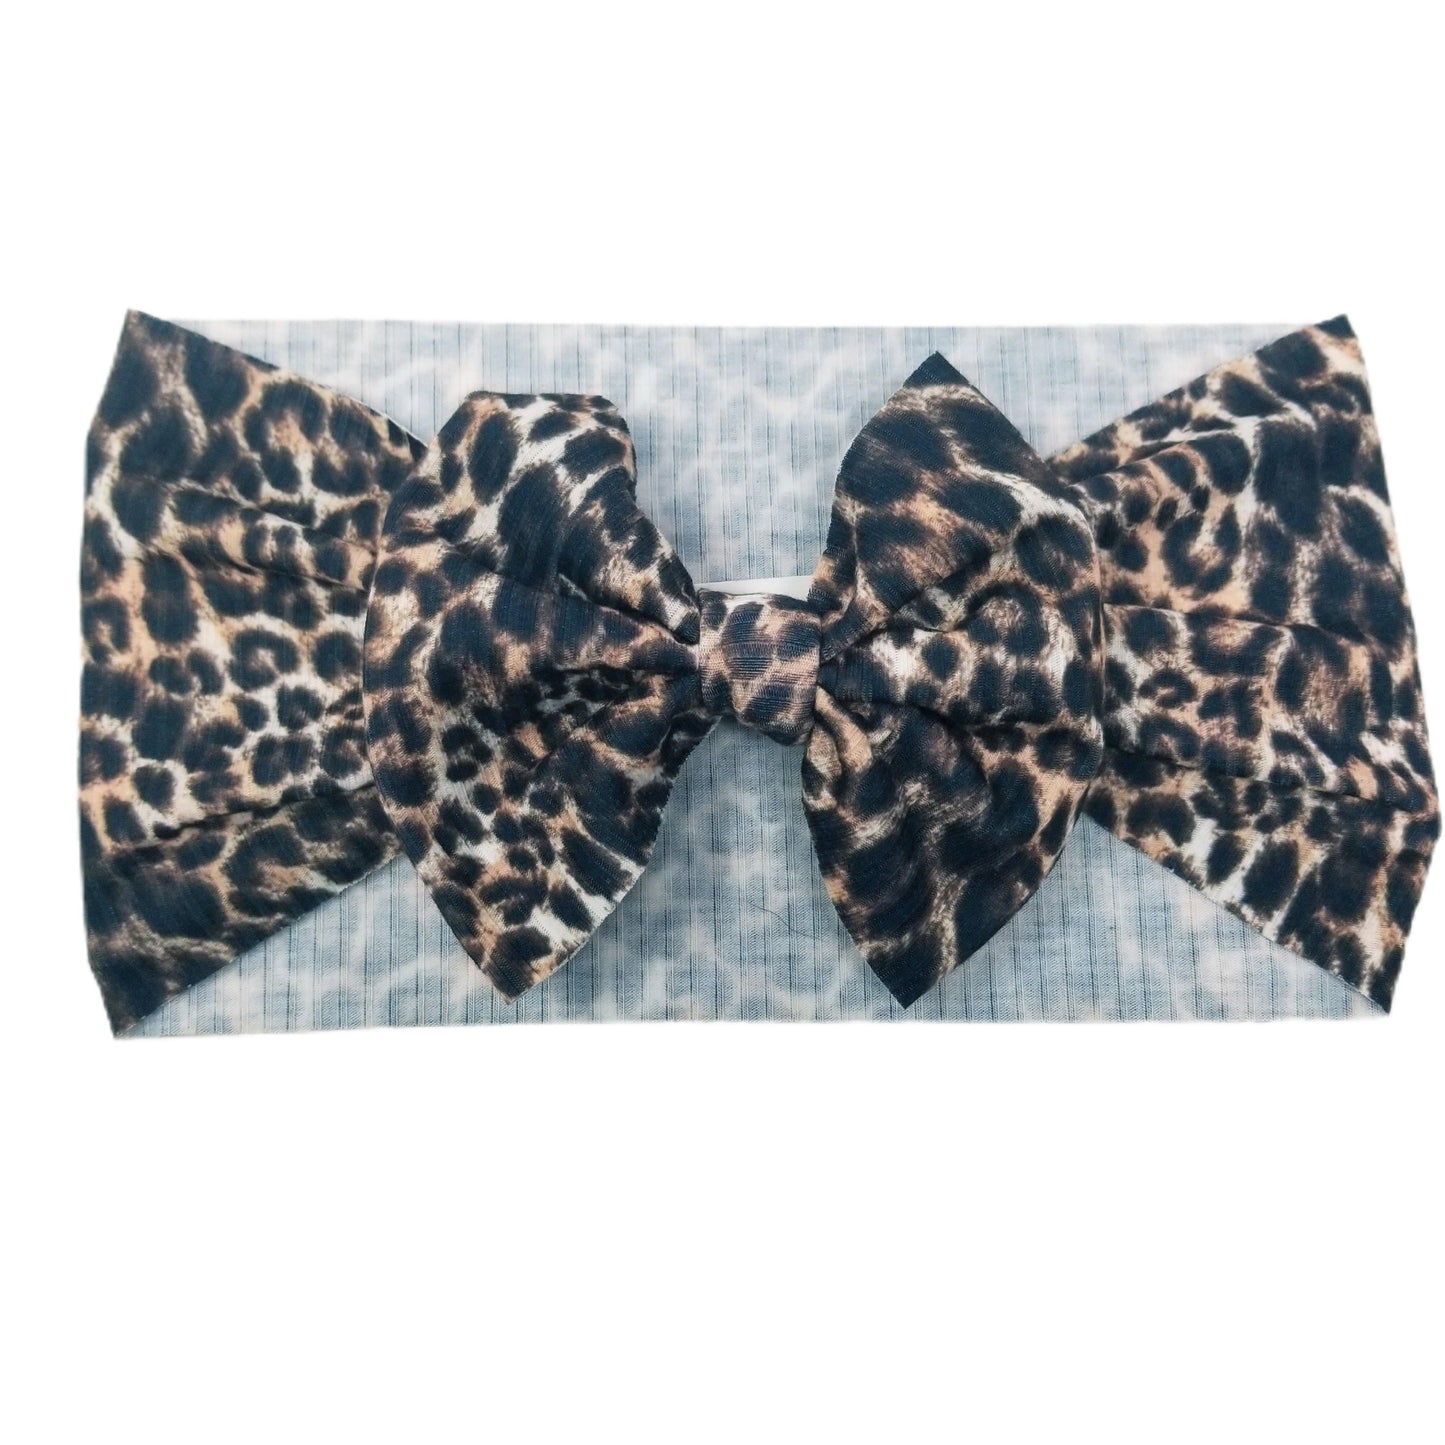 5 inch Leopard Rib Knit Fabric Bow Headwrap